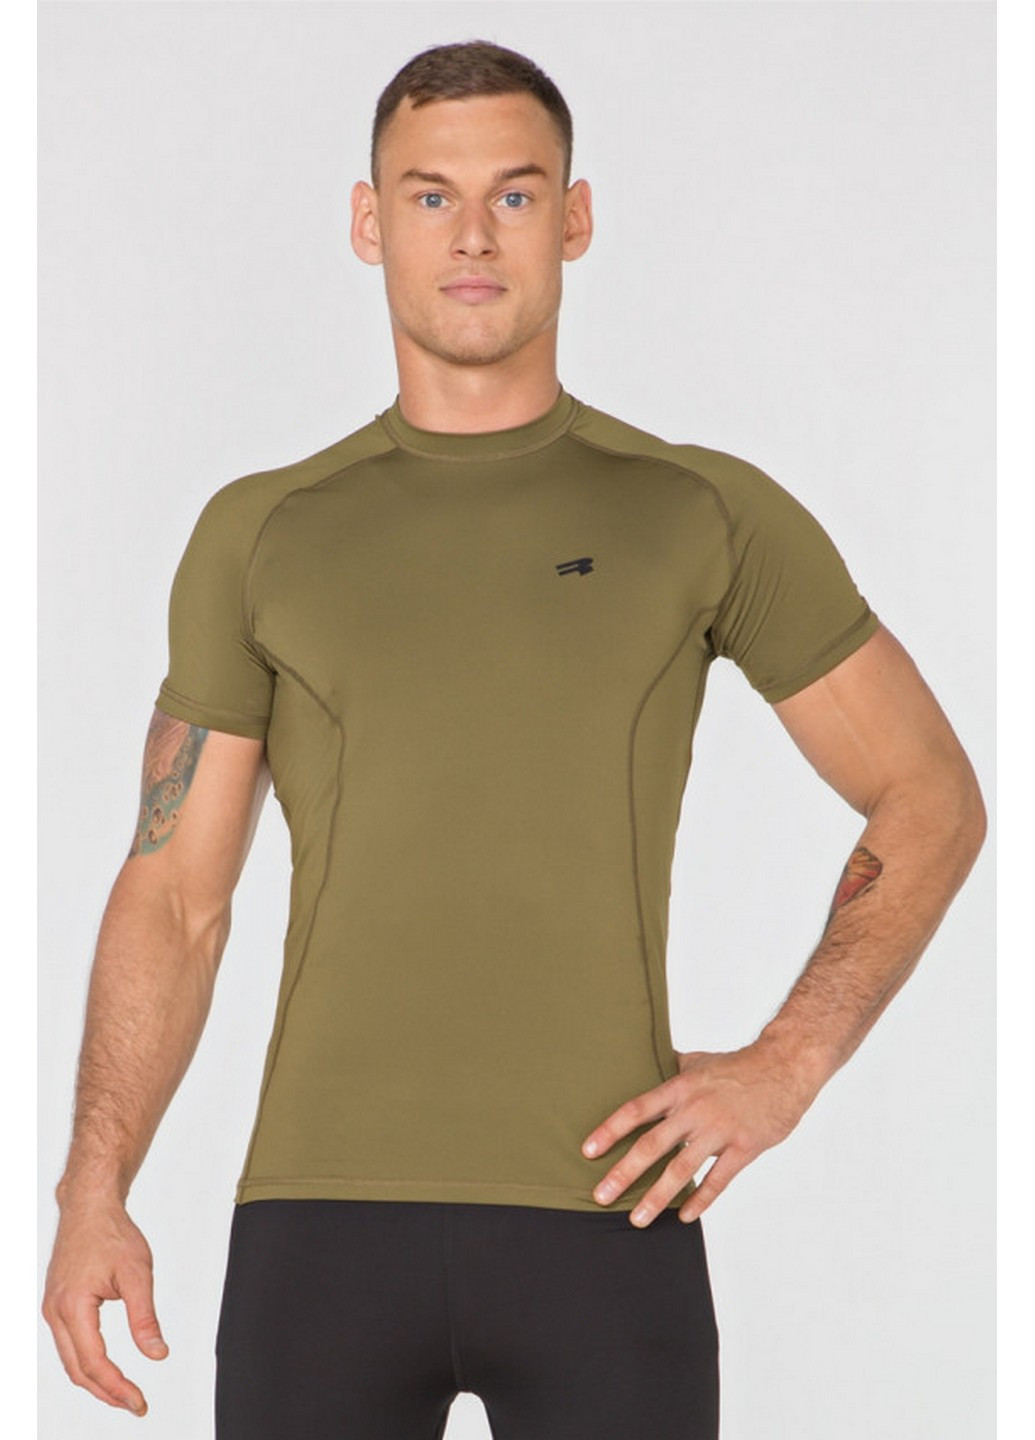 Комбінована чоловічі спортивні футболки (8074) l Radical